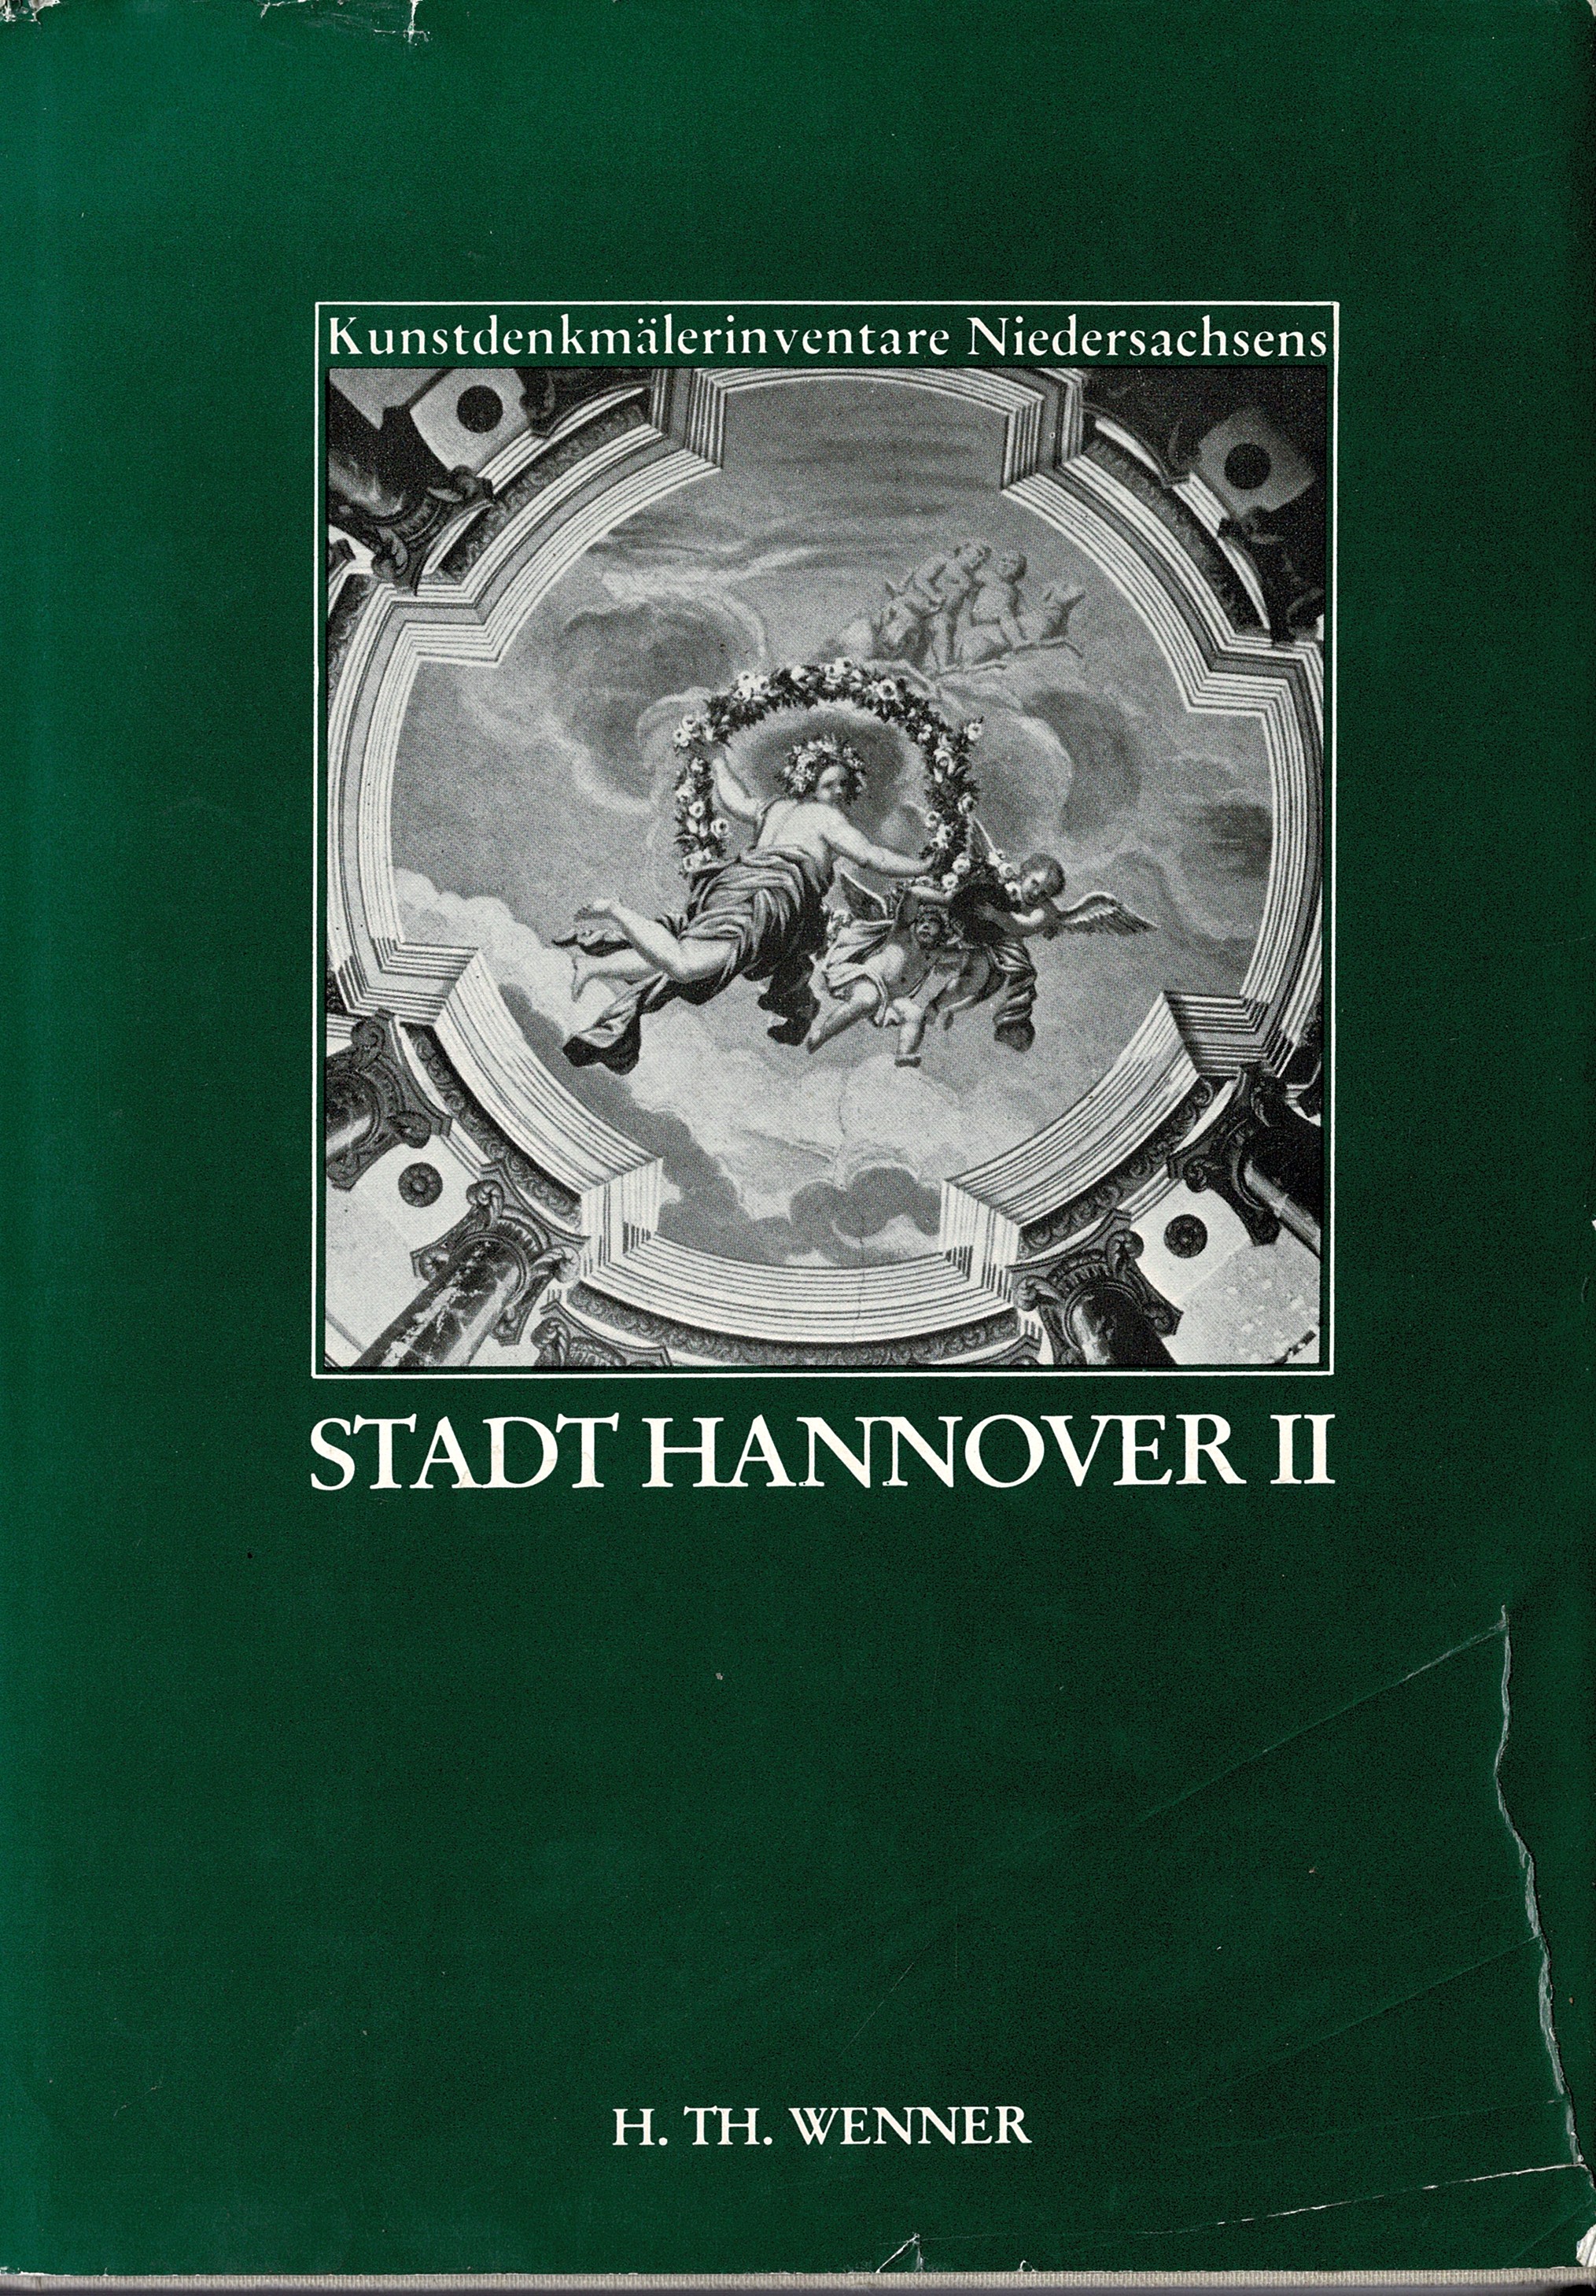 Die Kunstdenkmale der Stadt Hannover Teil II - Denkmäler der eingemeindeten Vorörter (1979) - Nöldeke, Arnold (Bearbeitung)